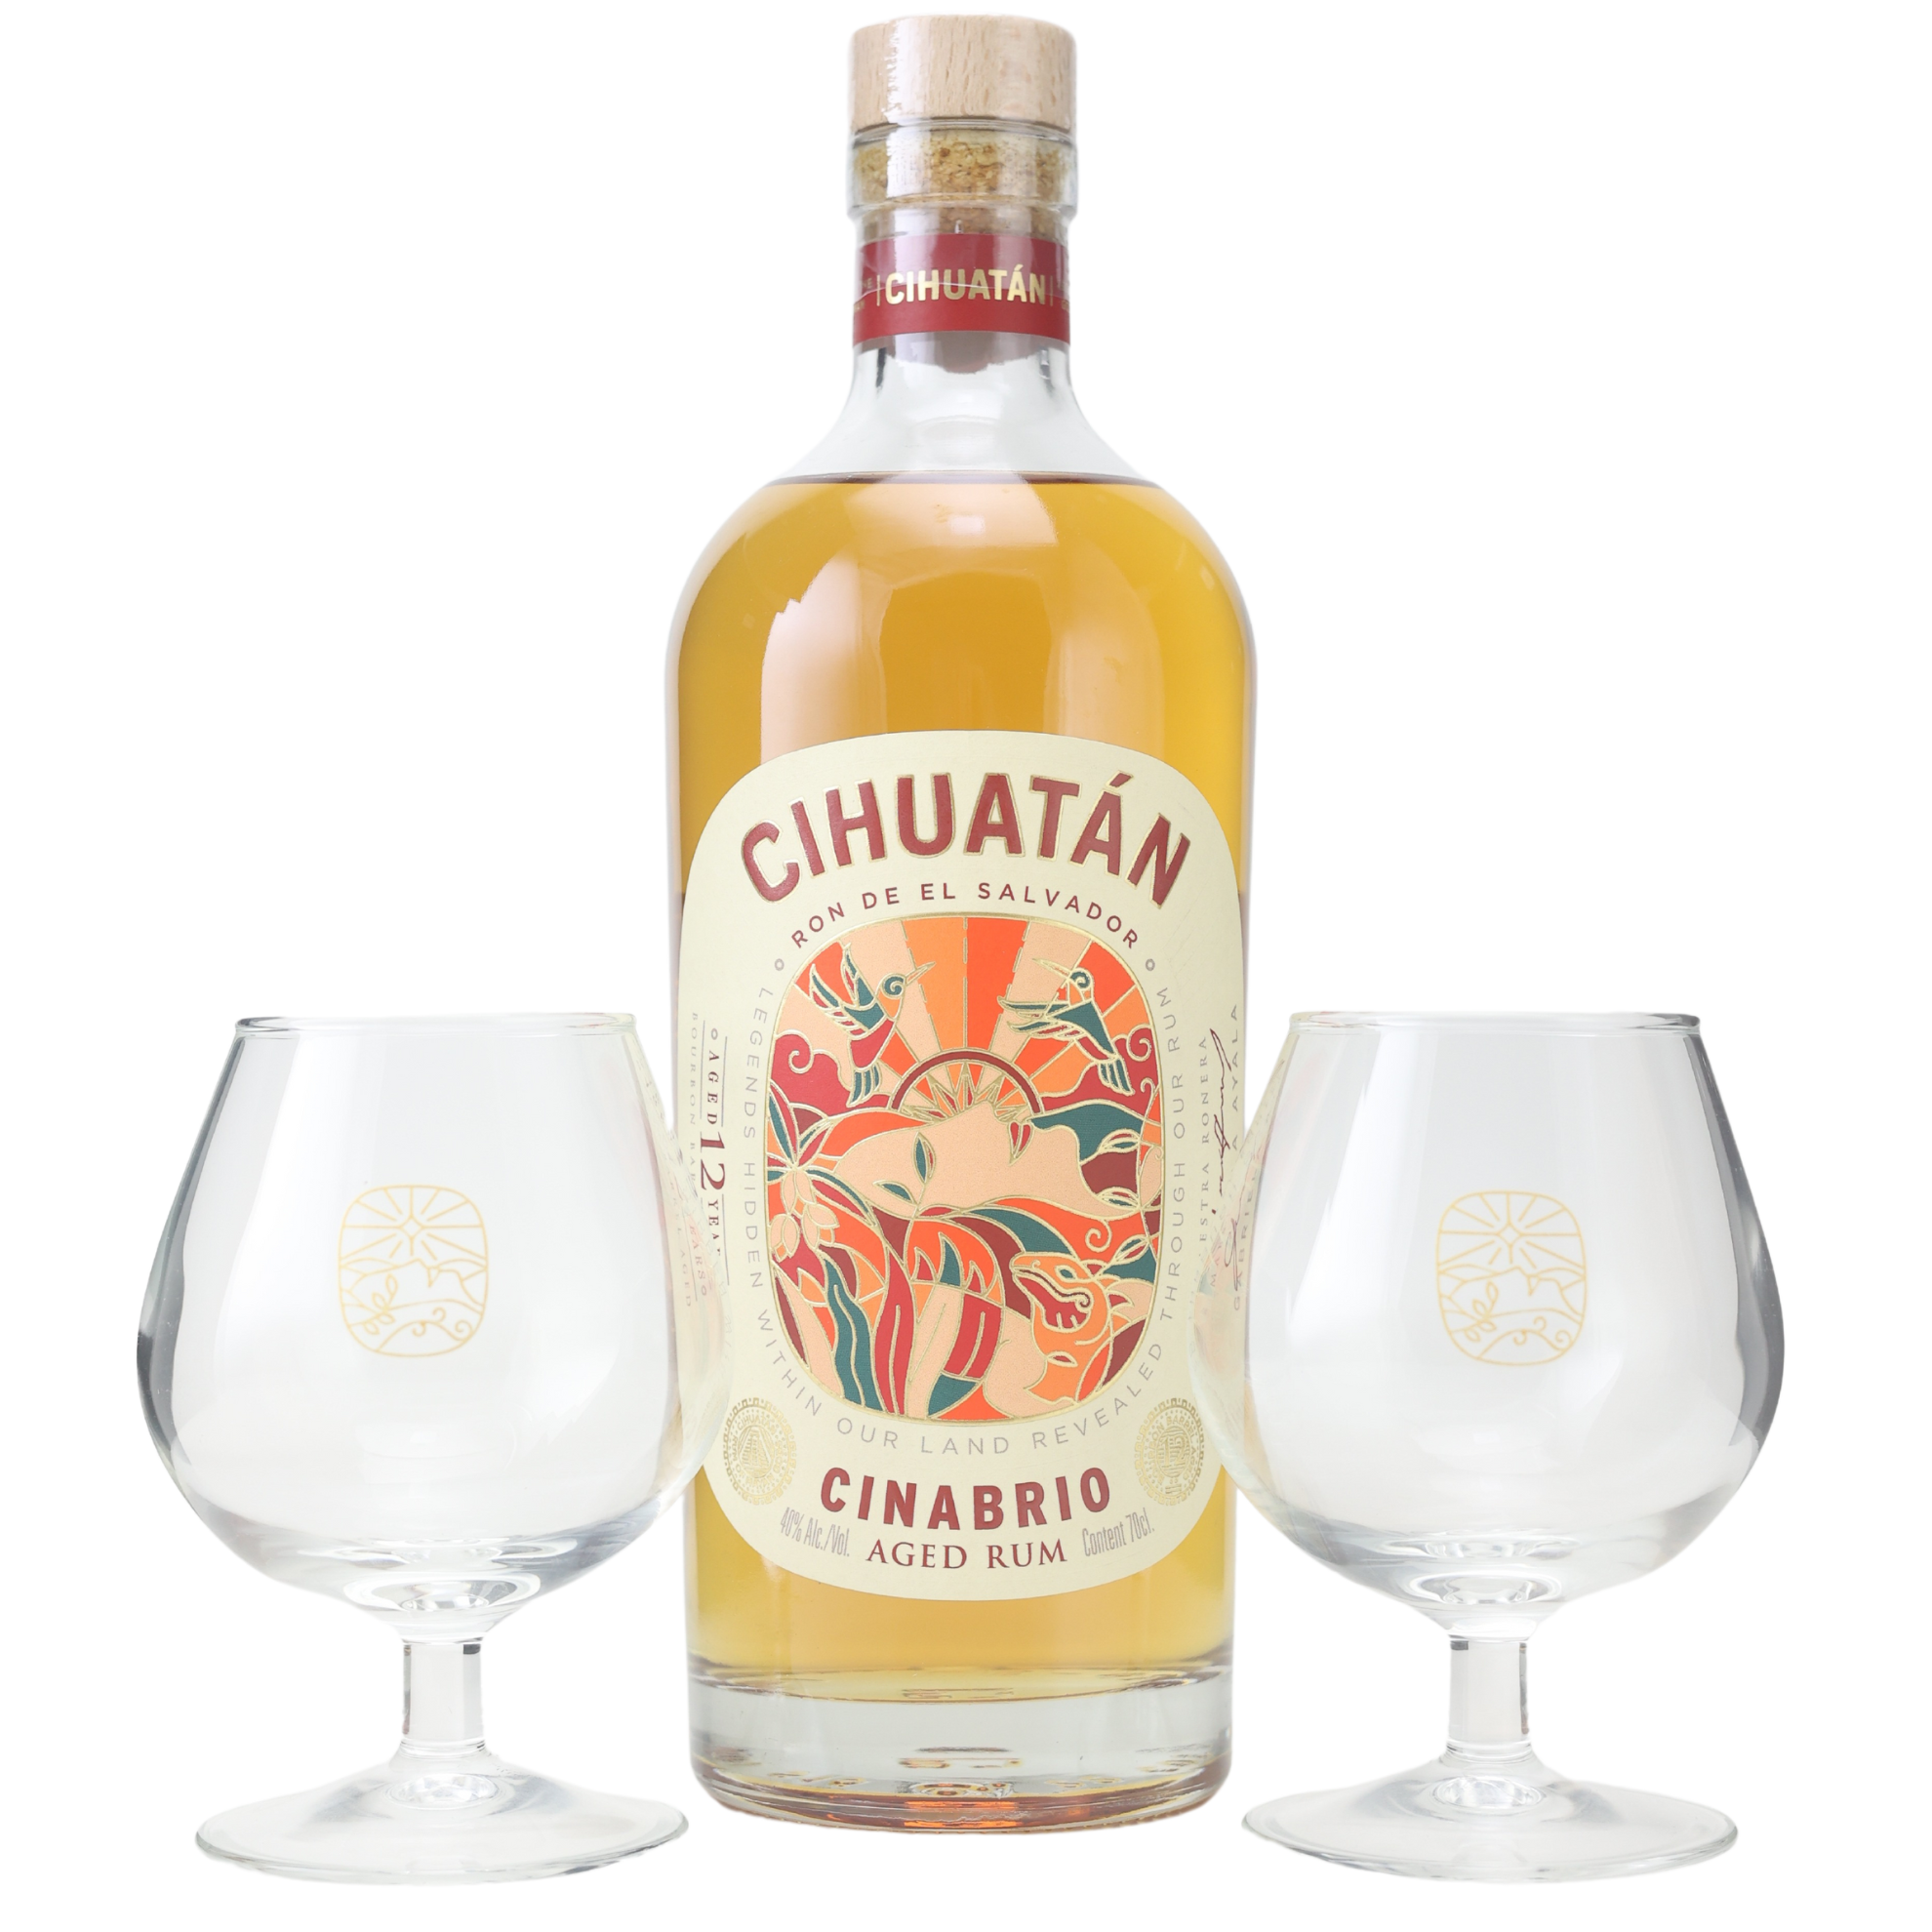 Ron Cihuatan Cinabrio Rum + 2 Gläser